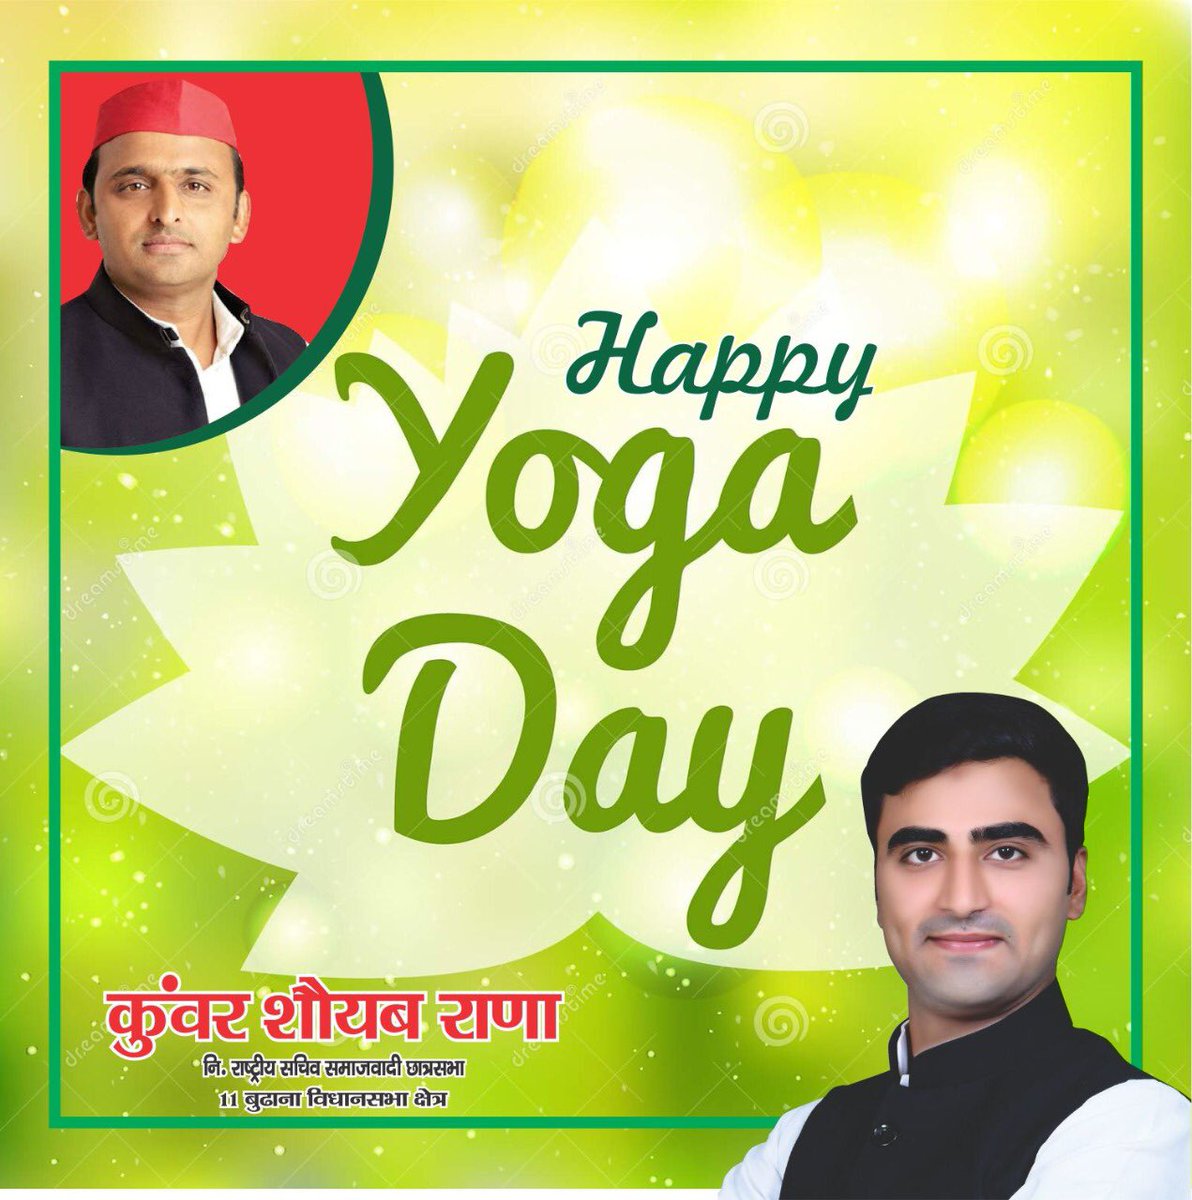 आप सभी देशवासियों को विश्व योगा दिवस की हार्दिक शुभकामनाएं।

#WorldYogaDay2020